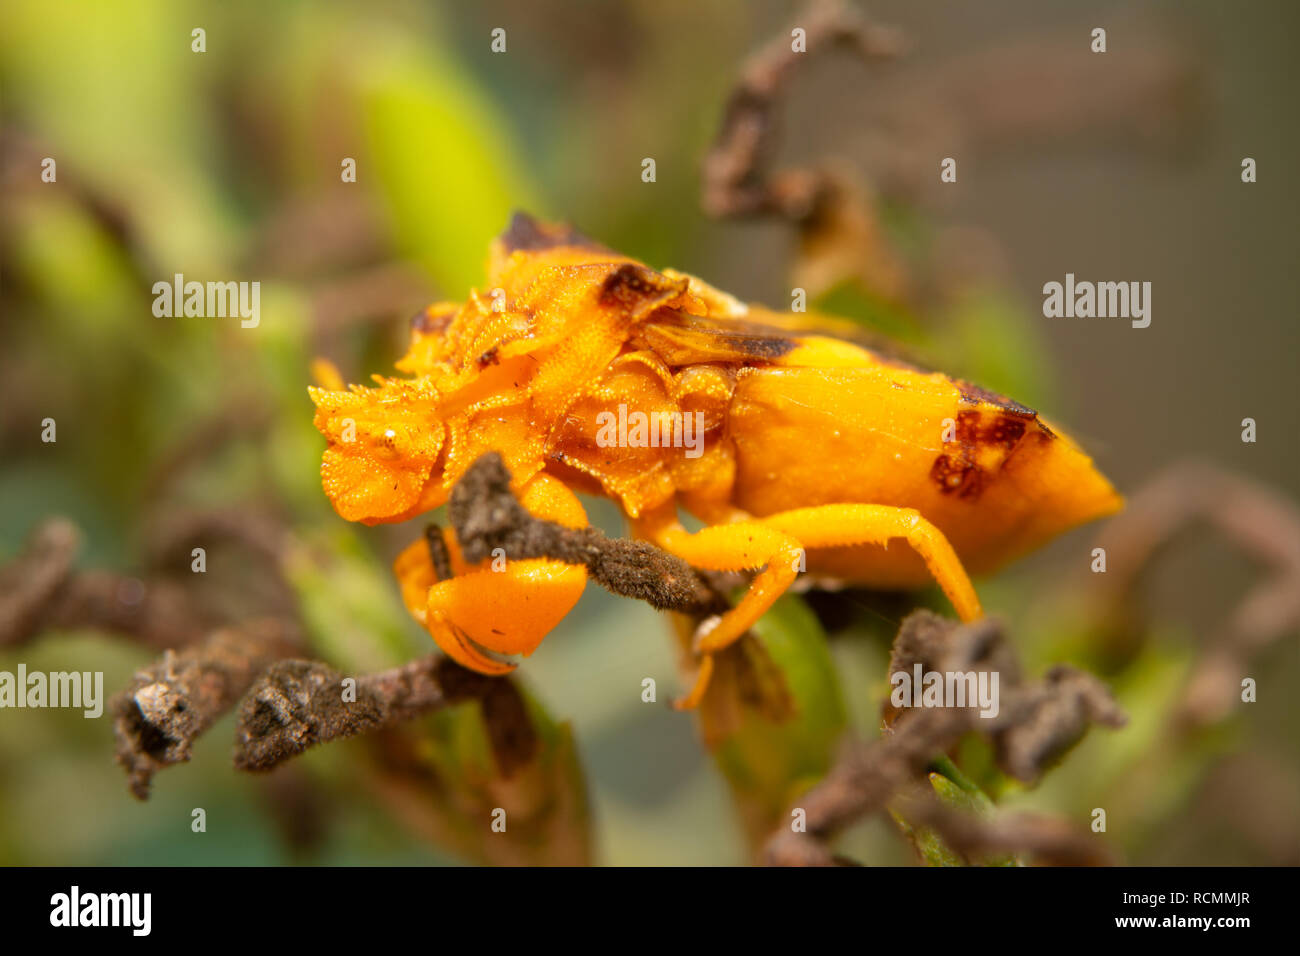 Hervorragend getarnt gezackten Ambush Bug auf der Lauer nach Beute auf einem butterflybush Stockfoto